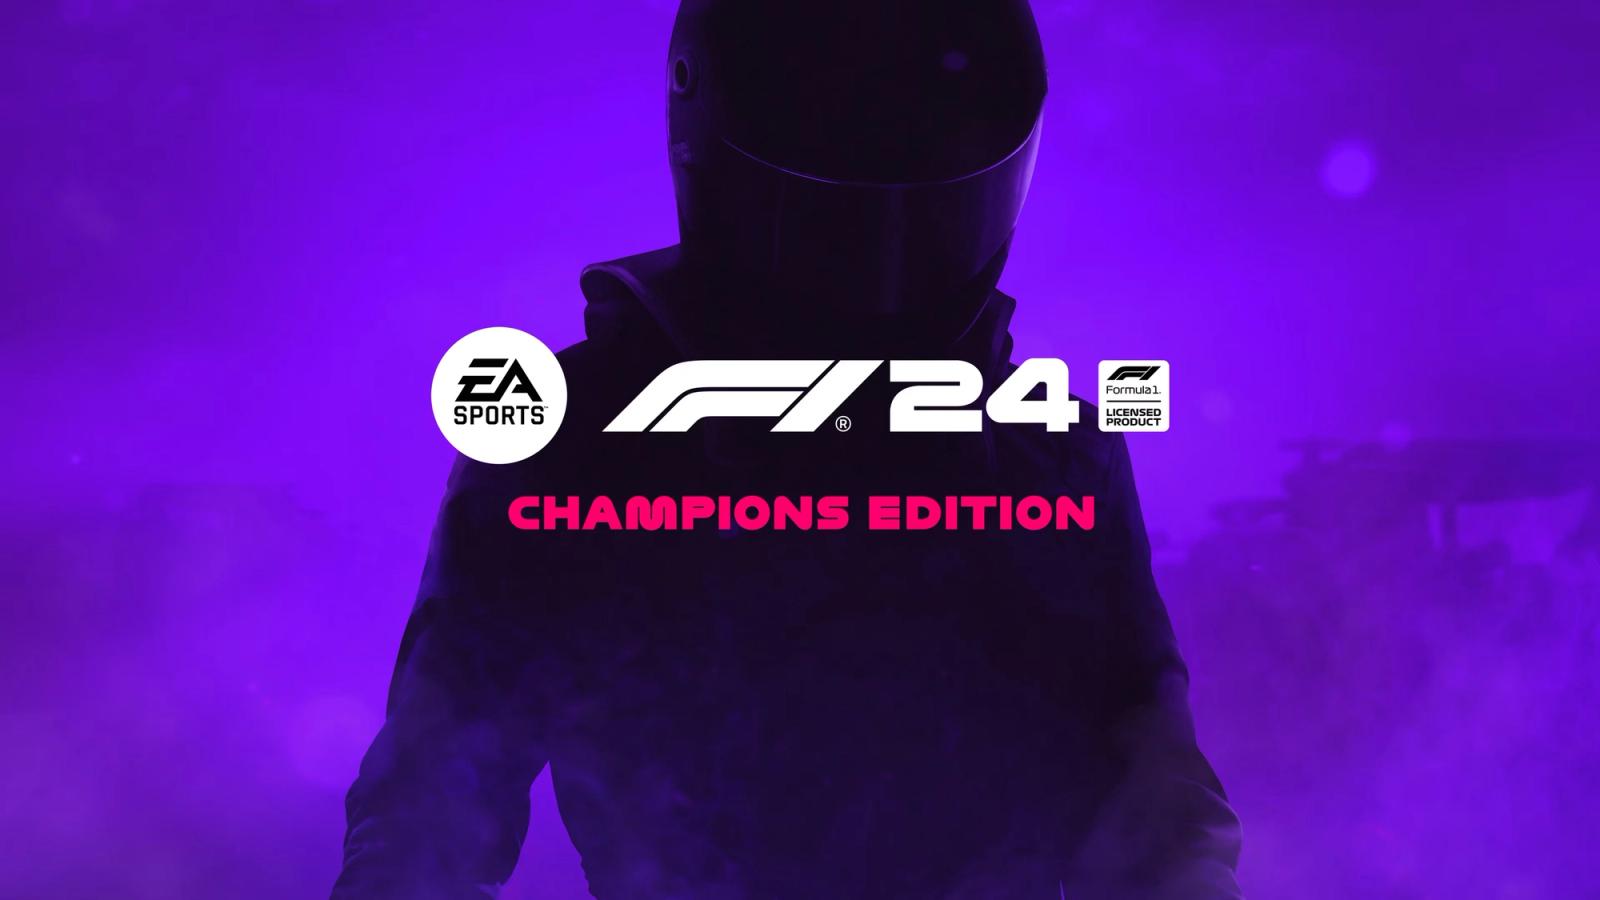 F1 24 Champions Edition art